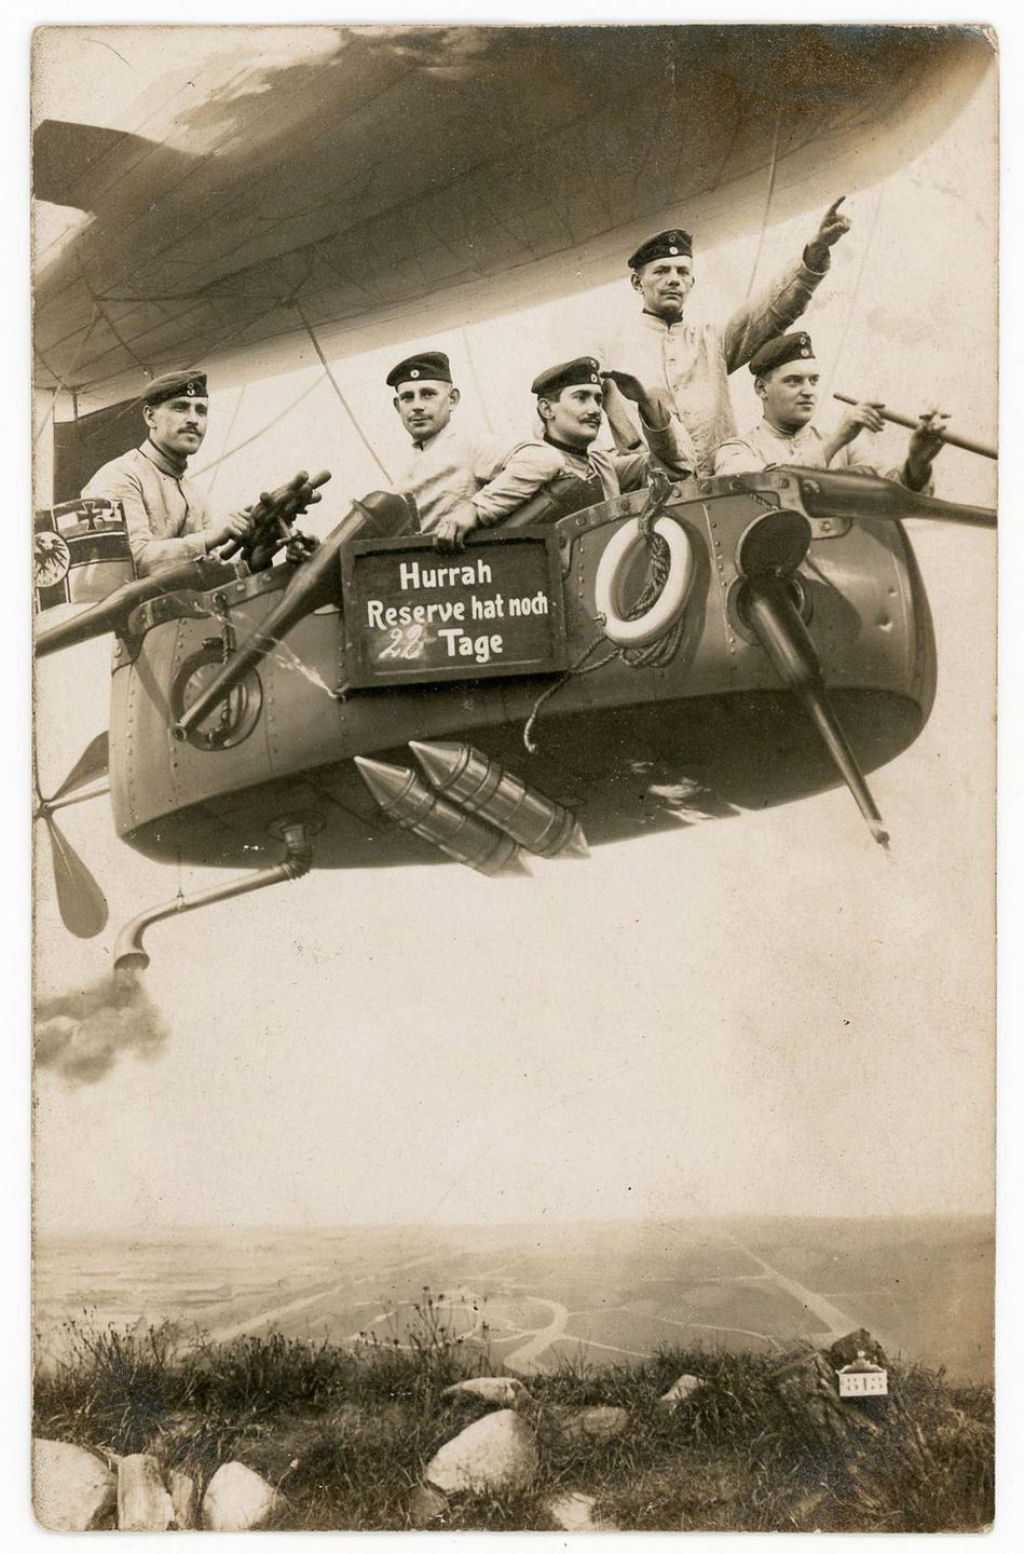 Fotos engraadas mostram soldados da Primeira Guerra Mundial posando com falsos adereos militares 04